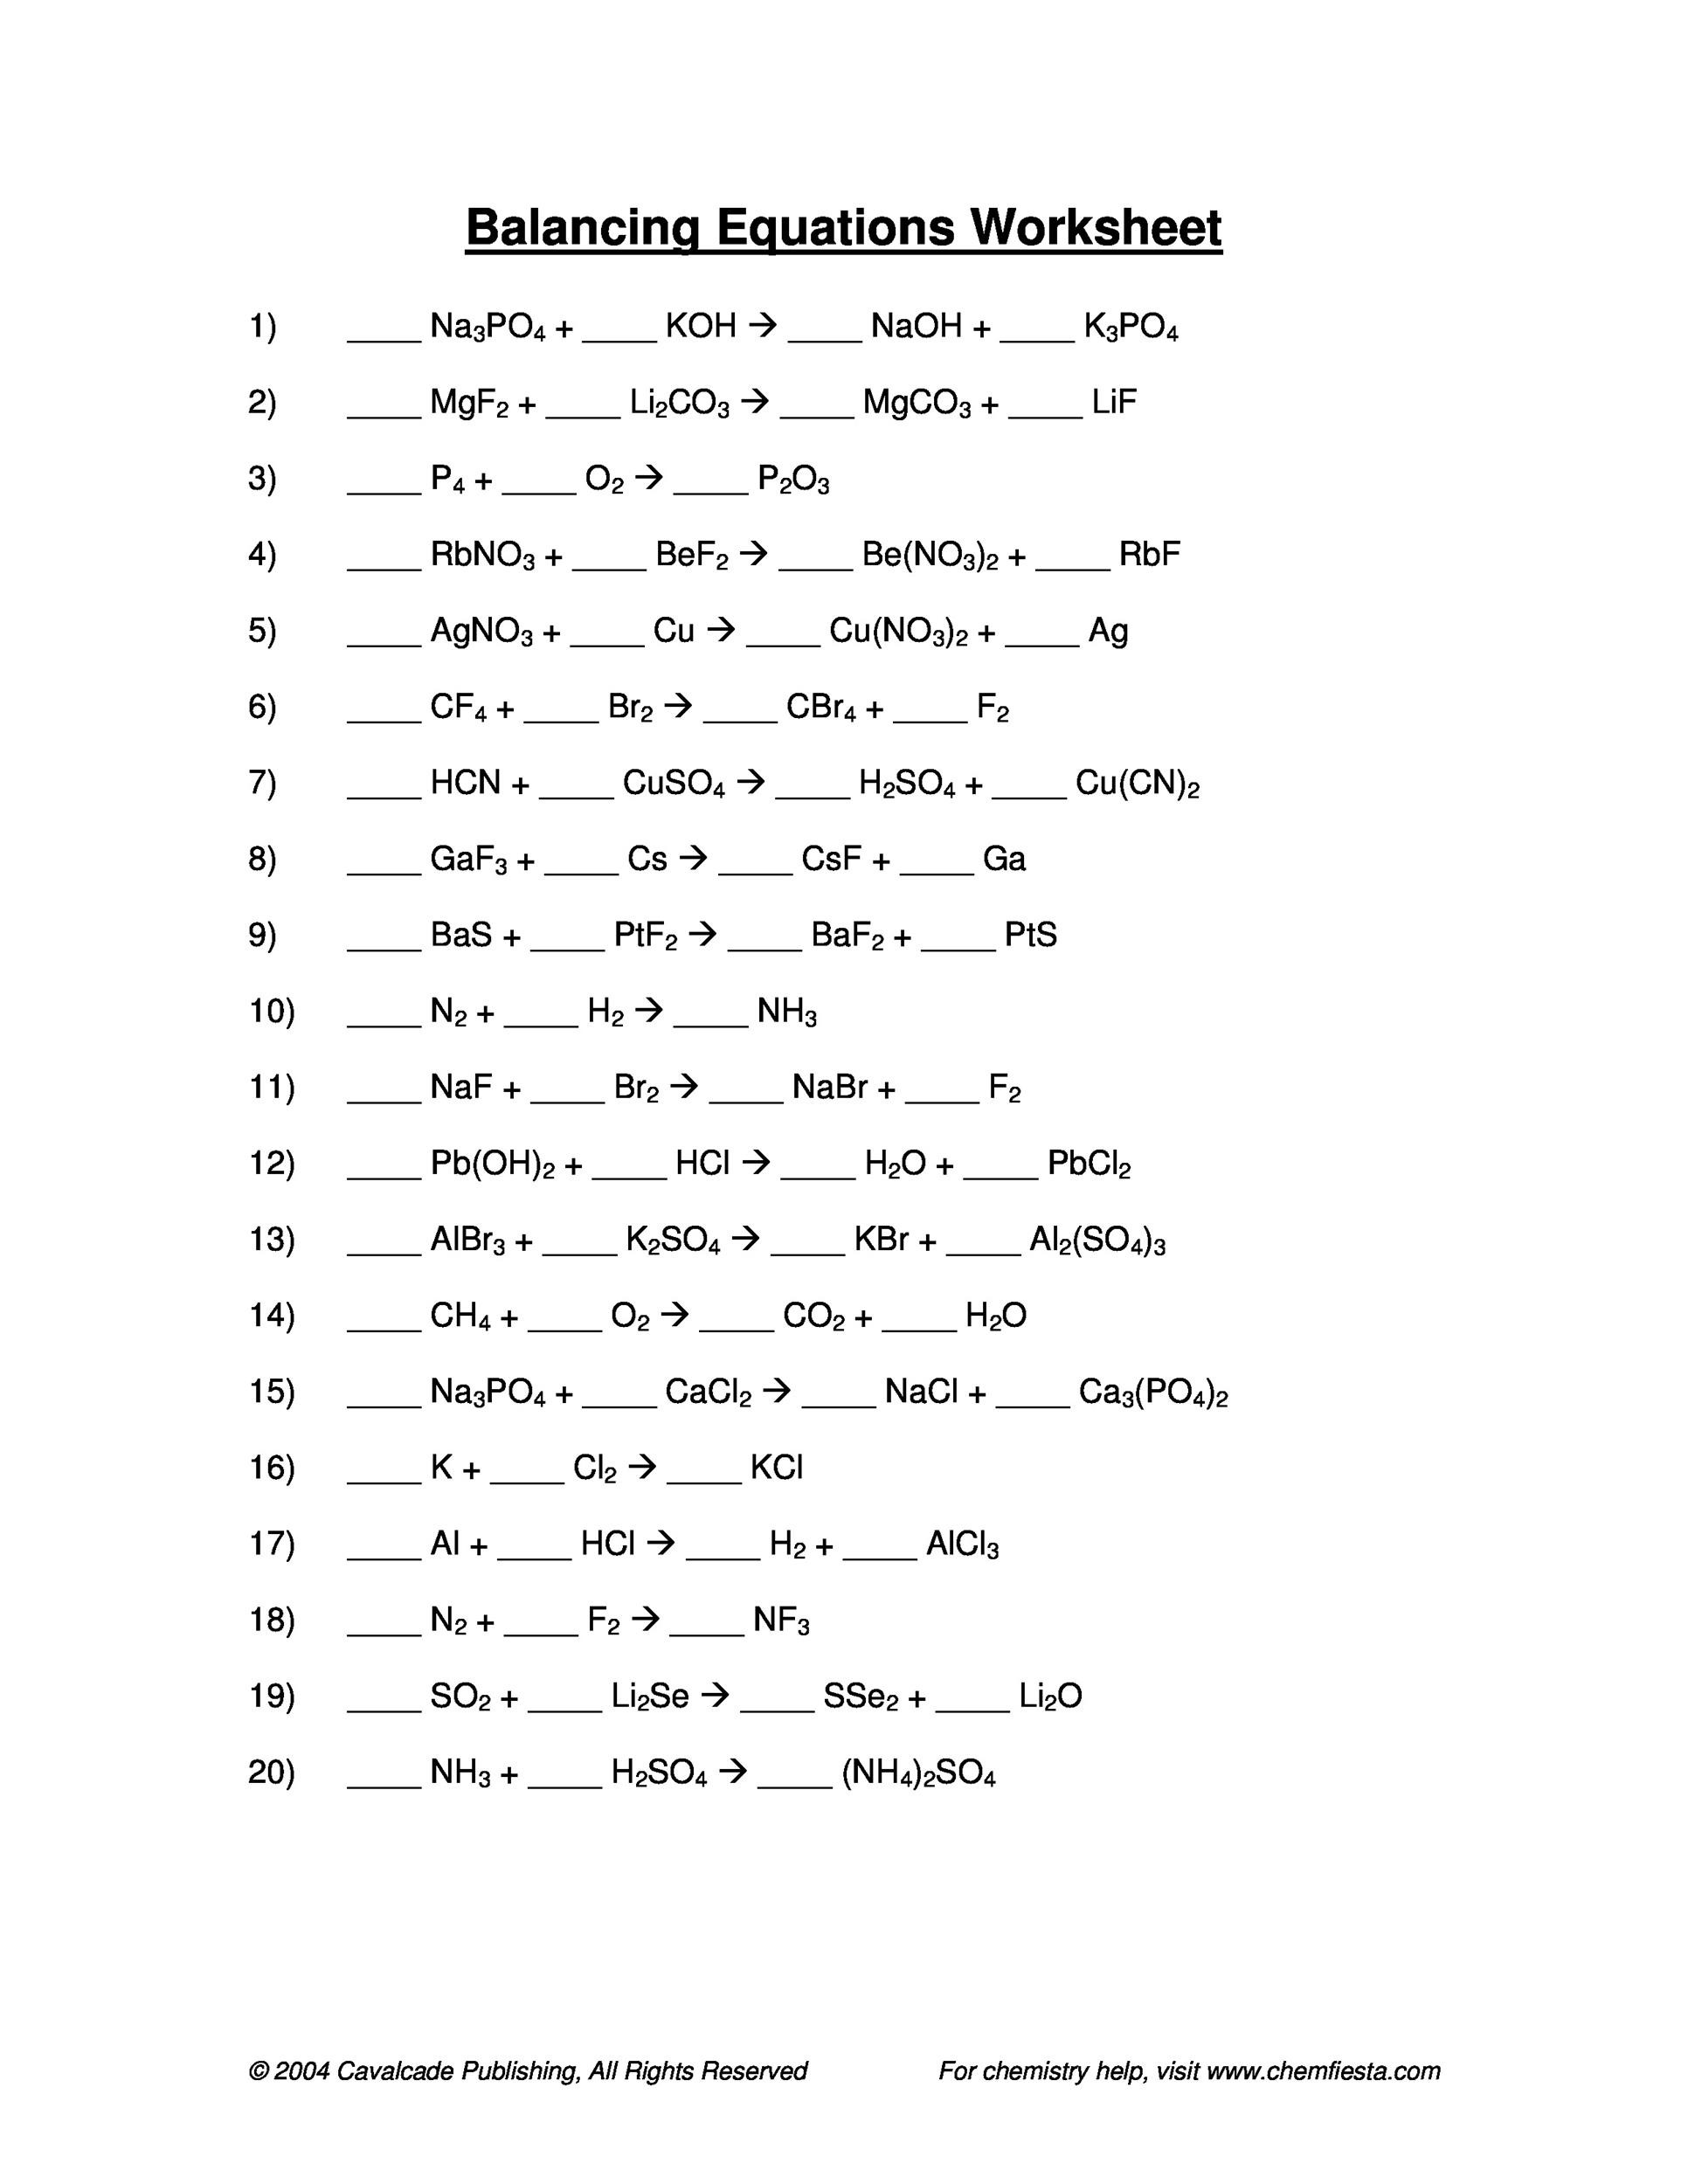 Balancing Equations Worksheet Answers 49 Balancing Chemical Equations Worksheets [with Answers]